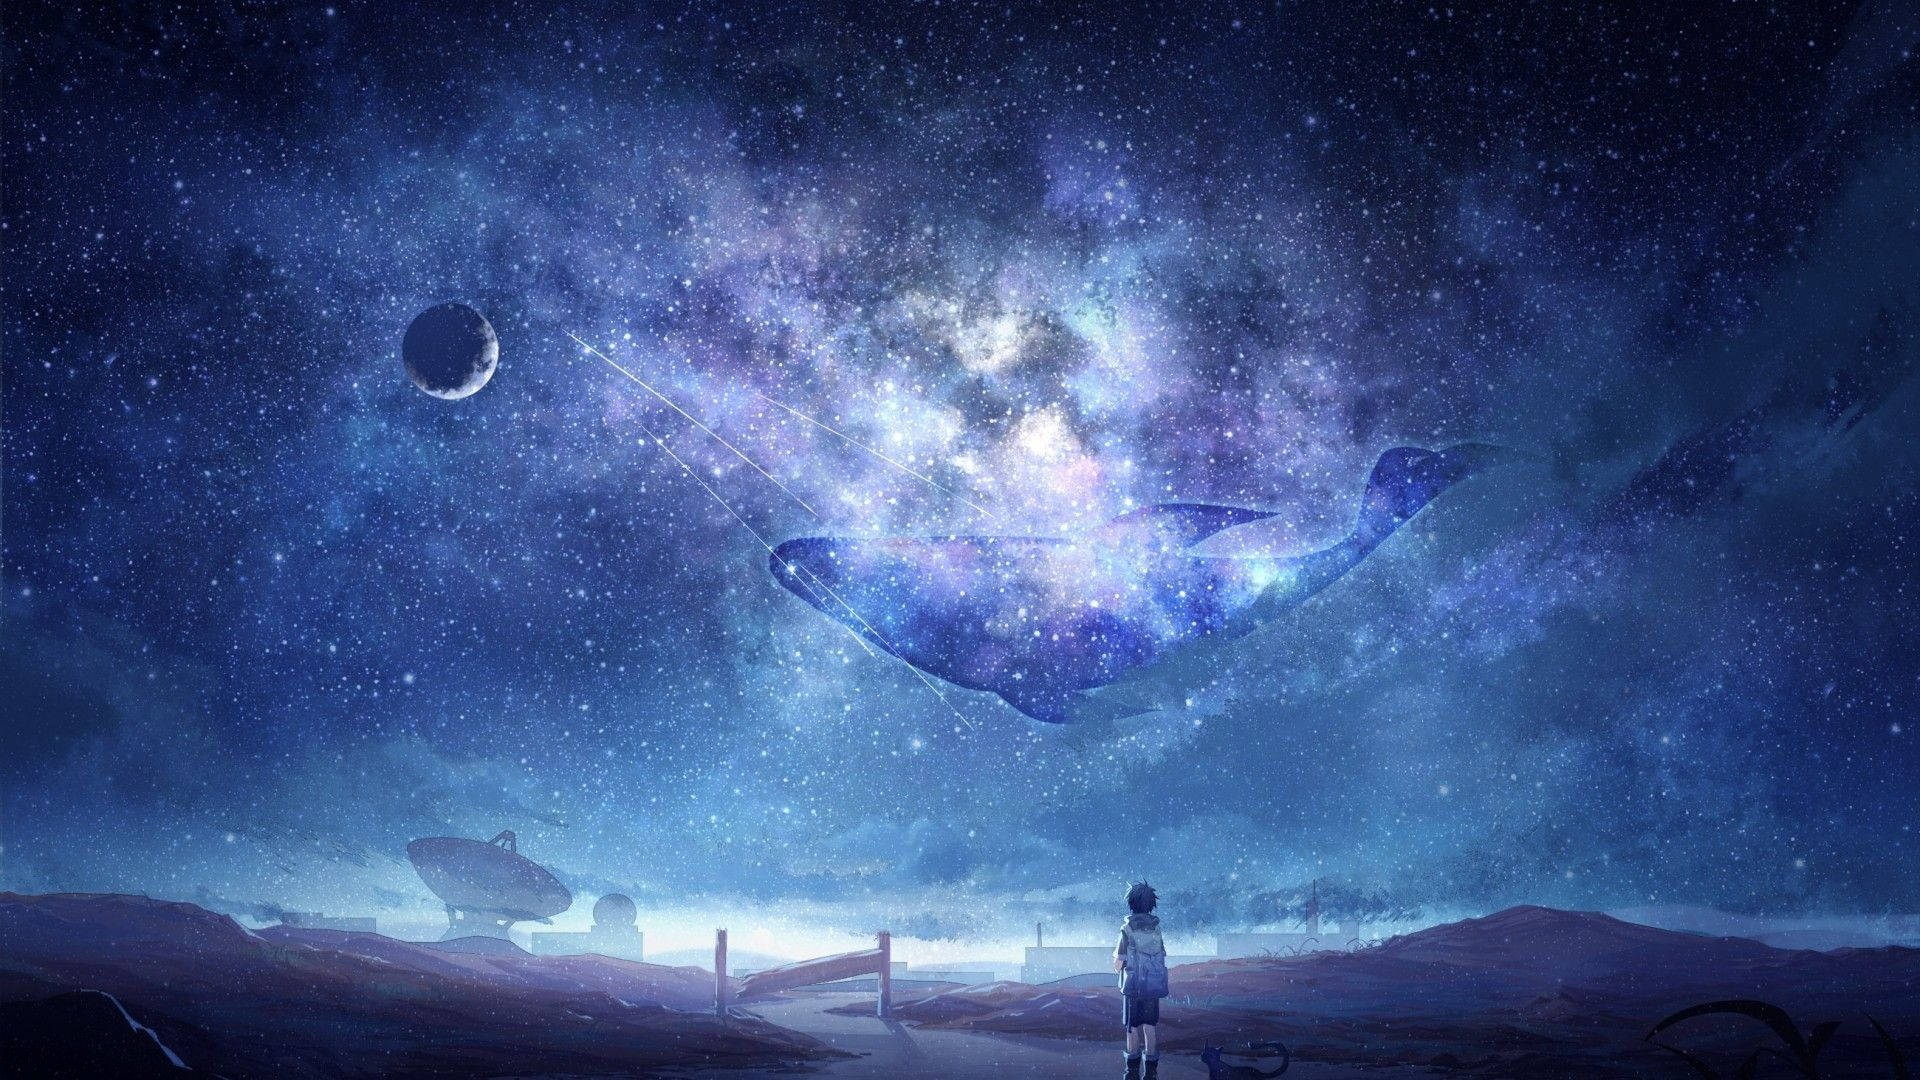 Hãy đắm mình trong bầu trời đêm cùng với hình nền Anime đầy mơ mộng. Những đám mây trôi qua như những cơn sóng êm ái trên biển đêm. Vào lúc này, bạn sẽ có thể cảm nhận được sự đẹp đẽ và tĩnh lặng của vũ trụ.